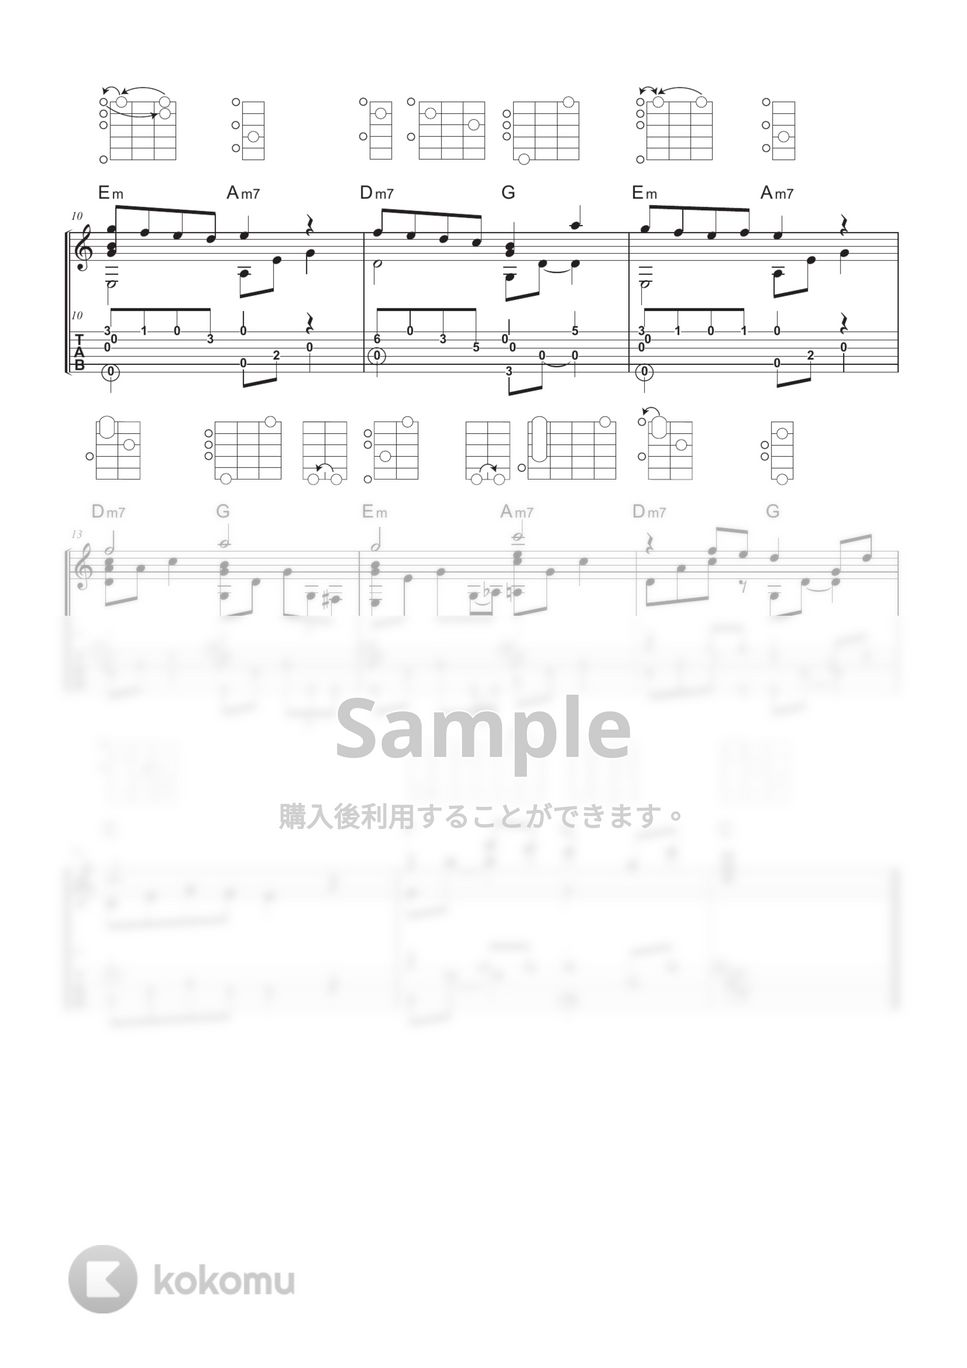 ジャム・ザ・ハウスネイル - 僕でありたい (ソロギター / ダイアグラム / 解説付き) by 川口コウスケ